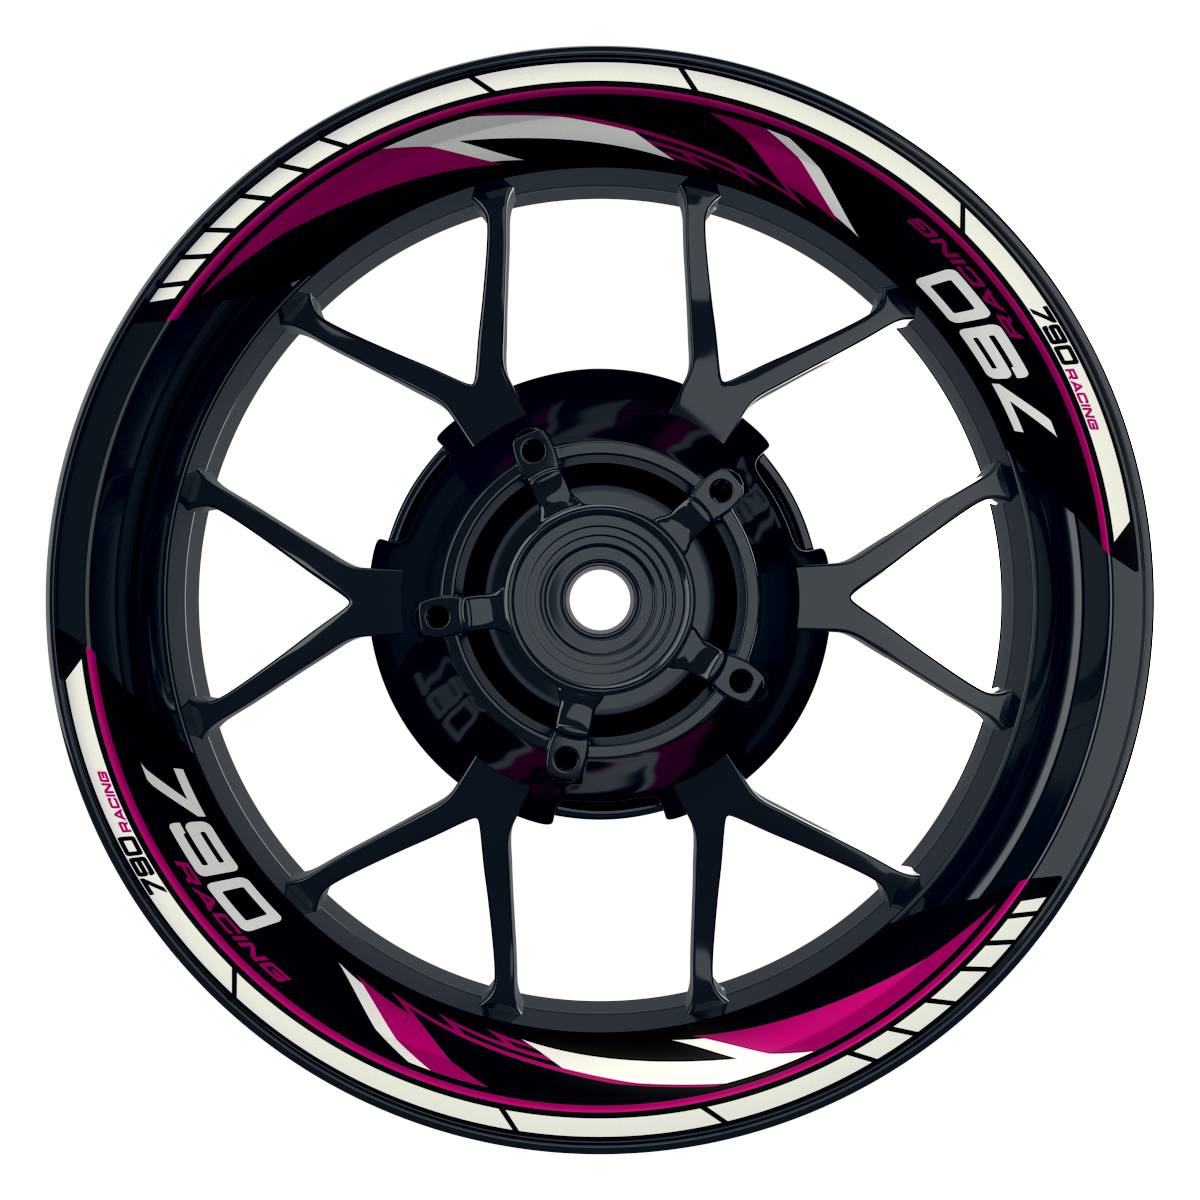 KTM Racing 790 Razor schwarz pink Frontansicht